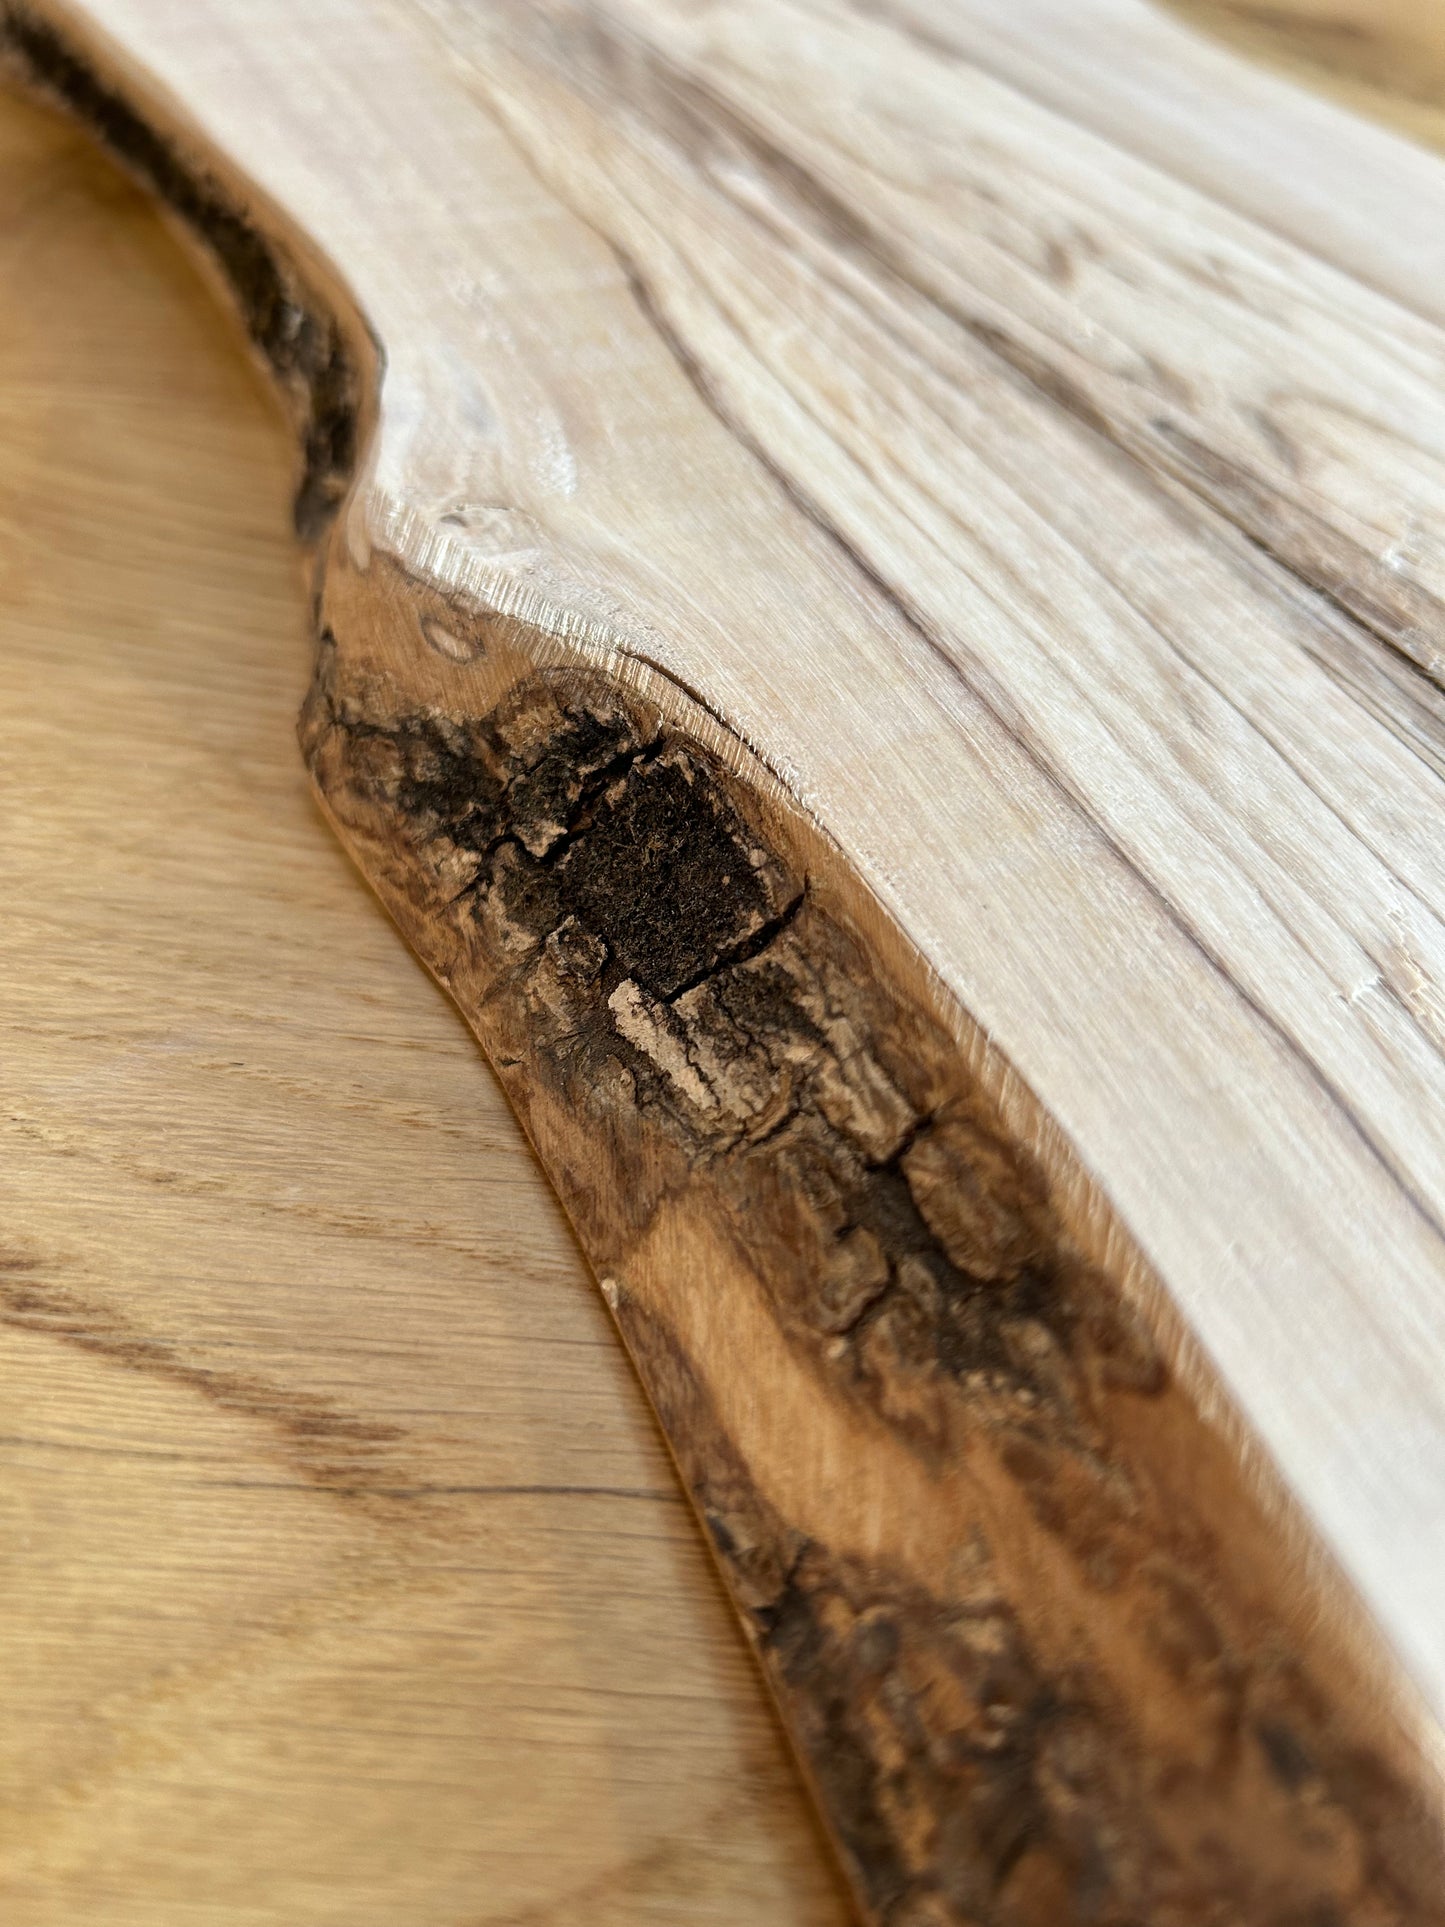 Tagliere in legno di olivo - Made in Blasi